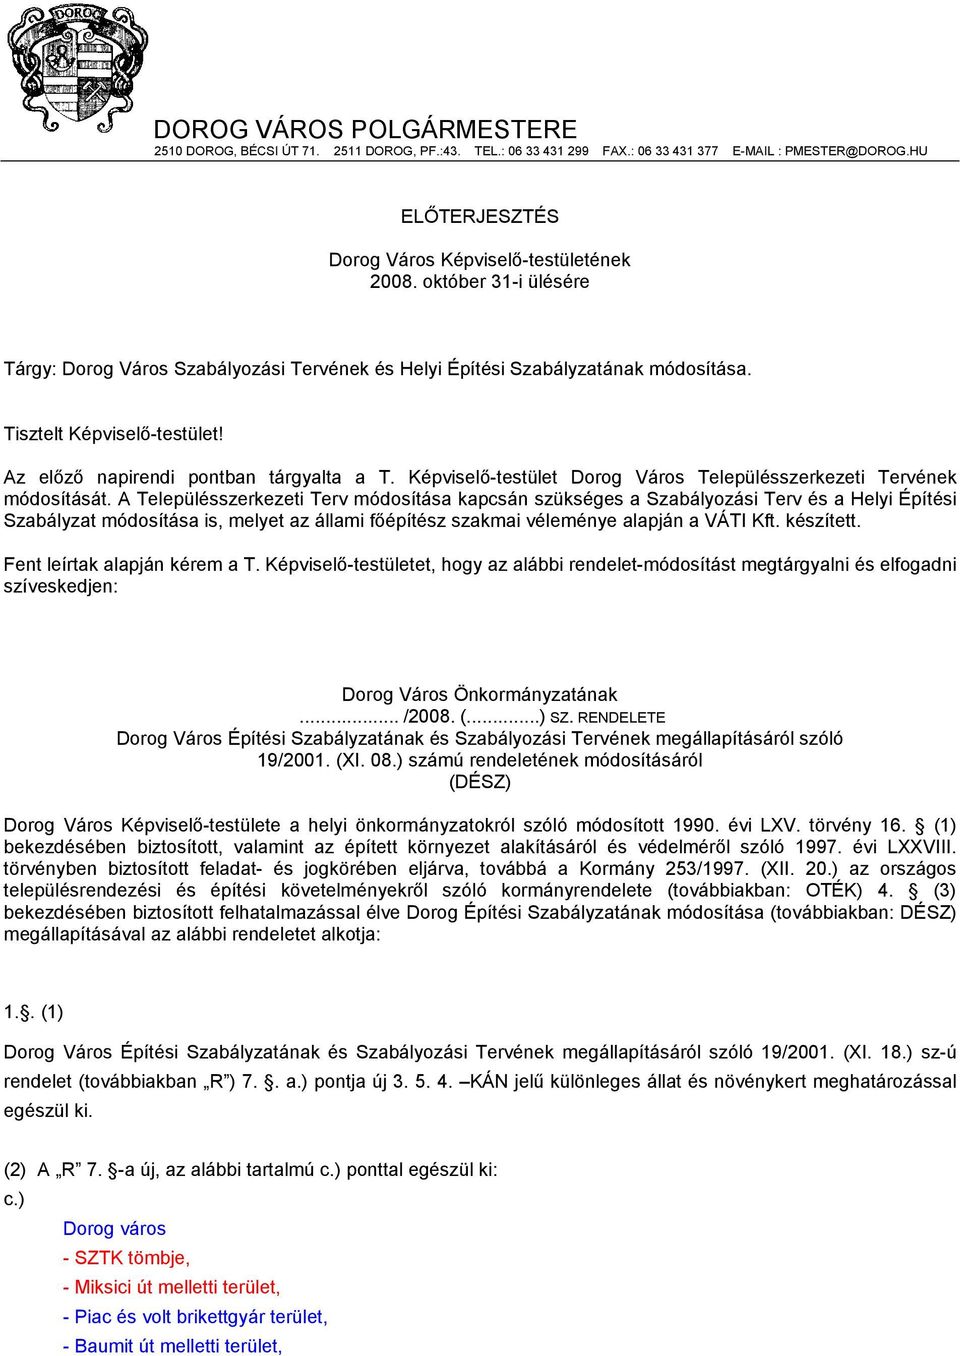 Képviselő-testület Dorog Város Településszerkezeti Tervének módosítását.